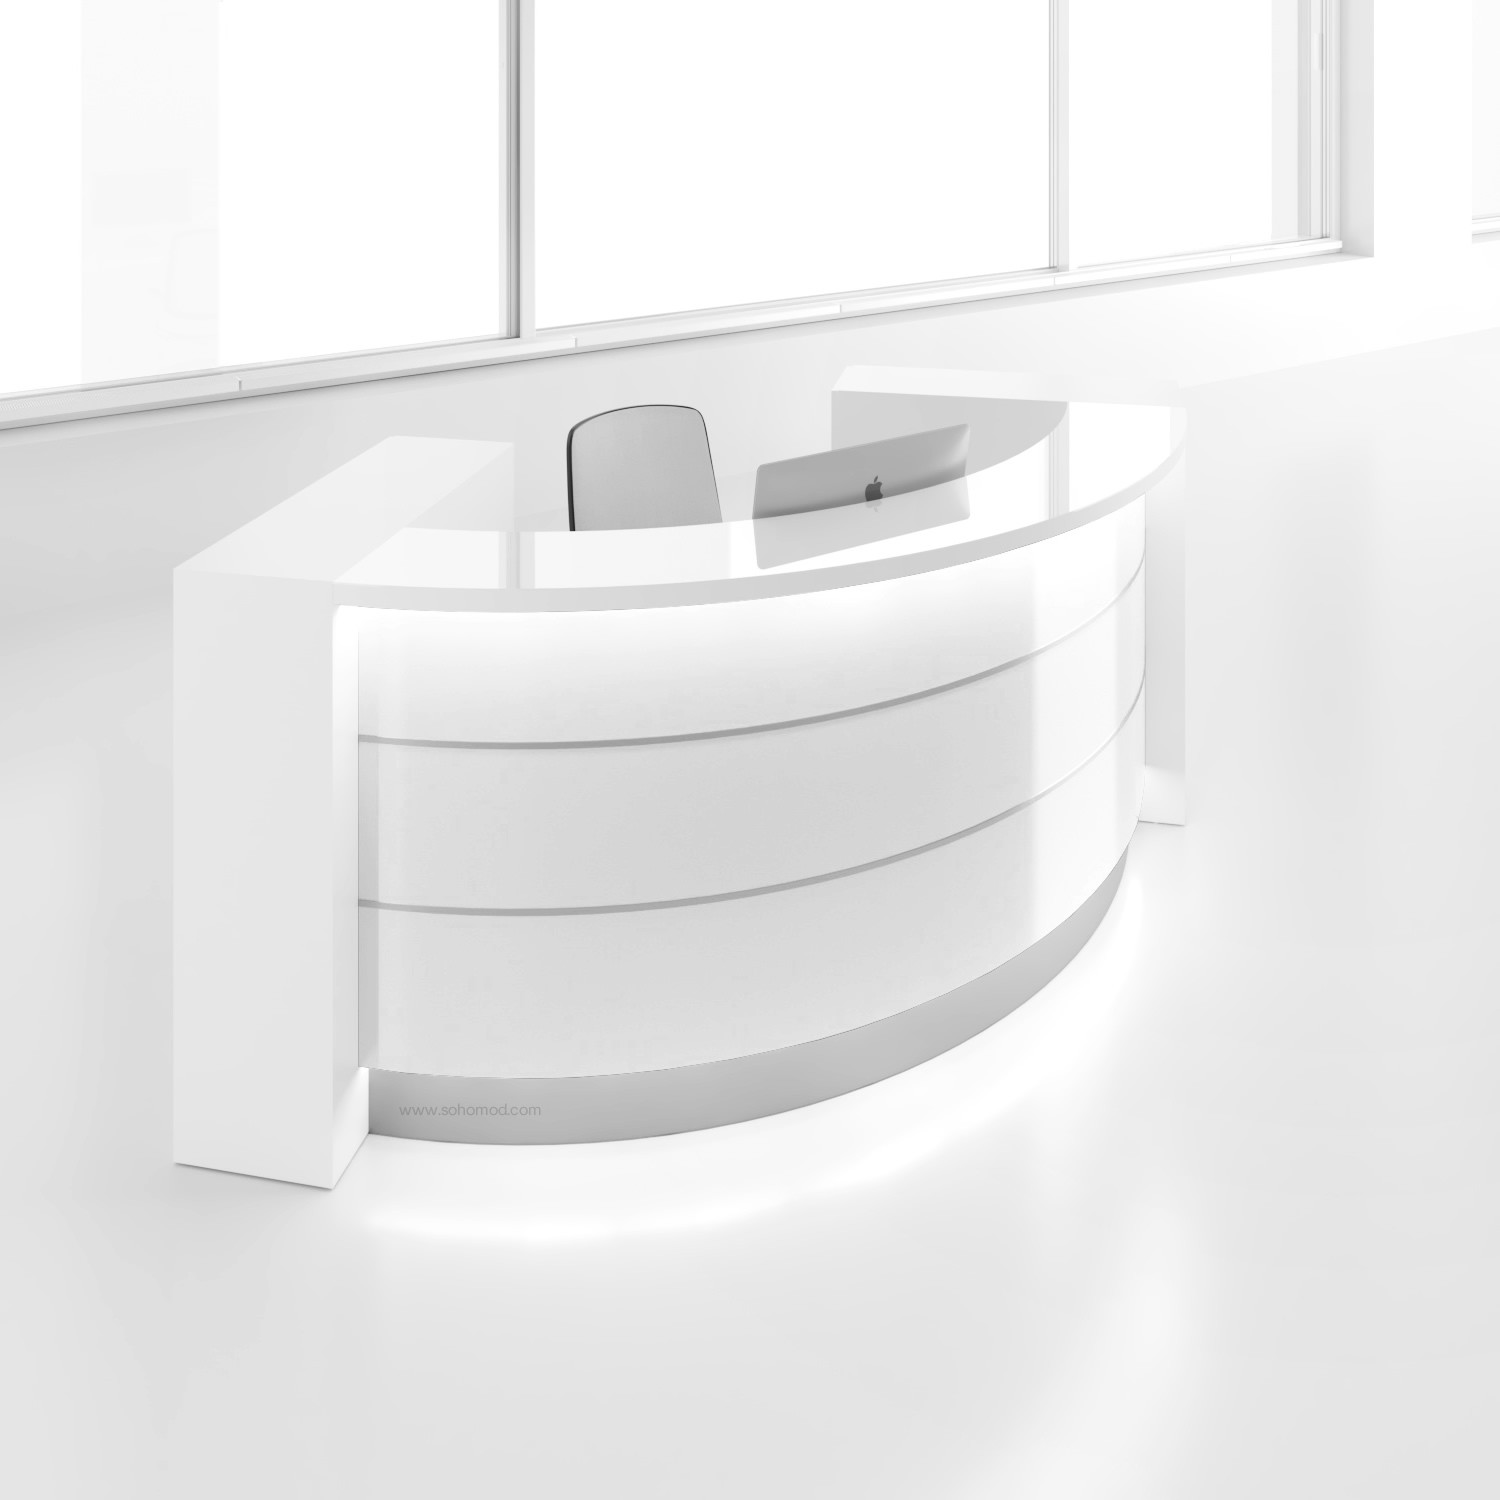 Valde lav73 reception desk high gloss white buy online at